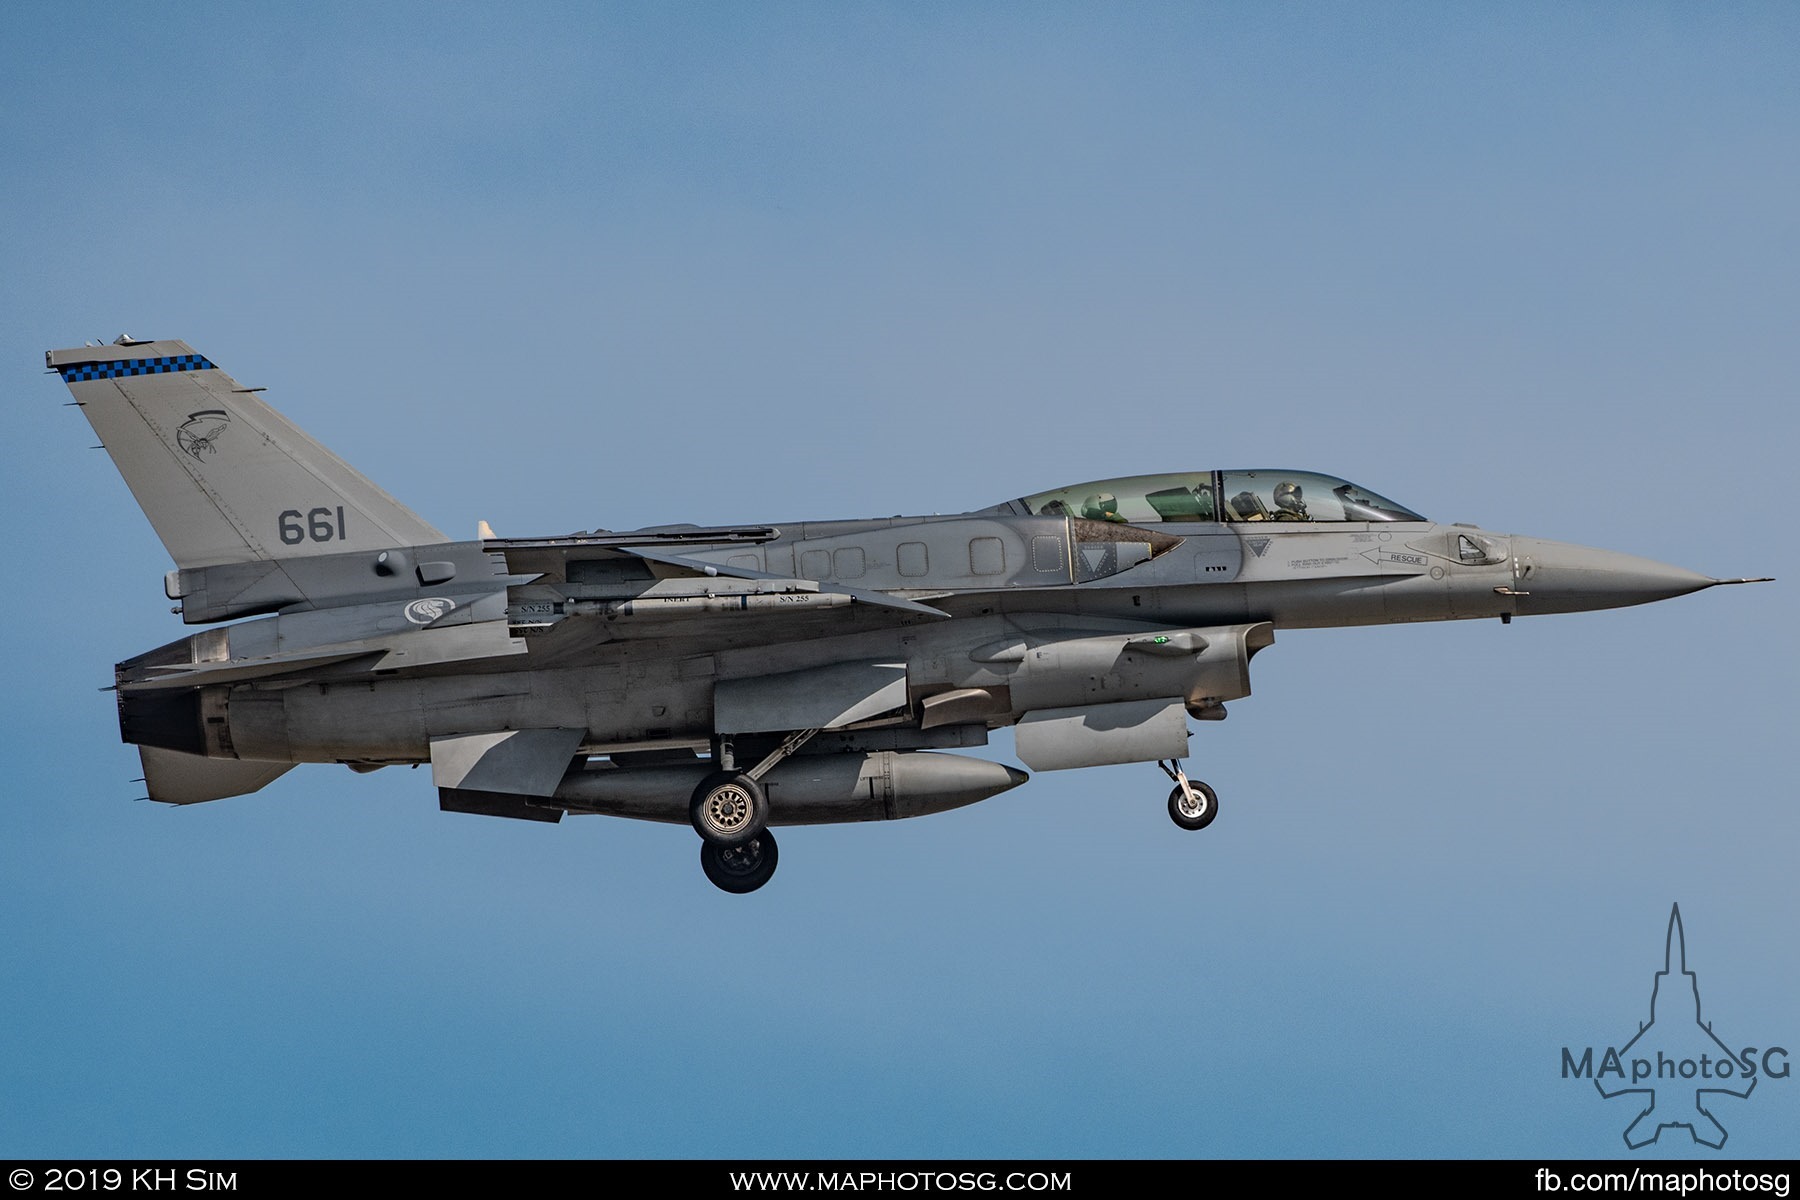 145 SQN F-16D+ (661)